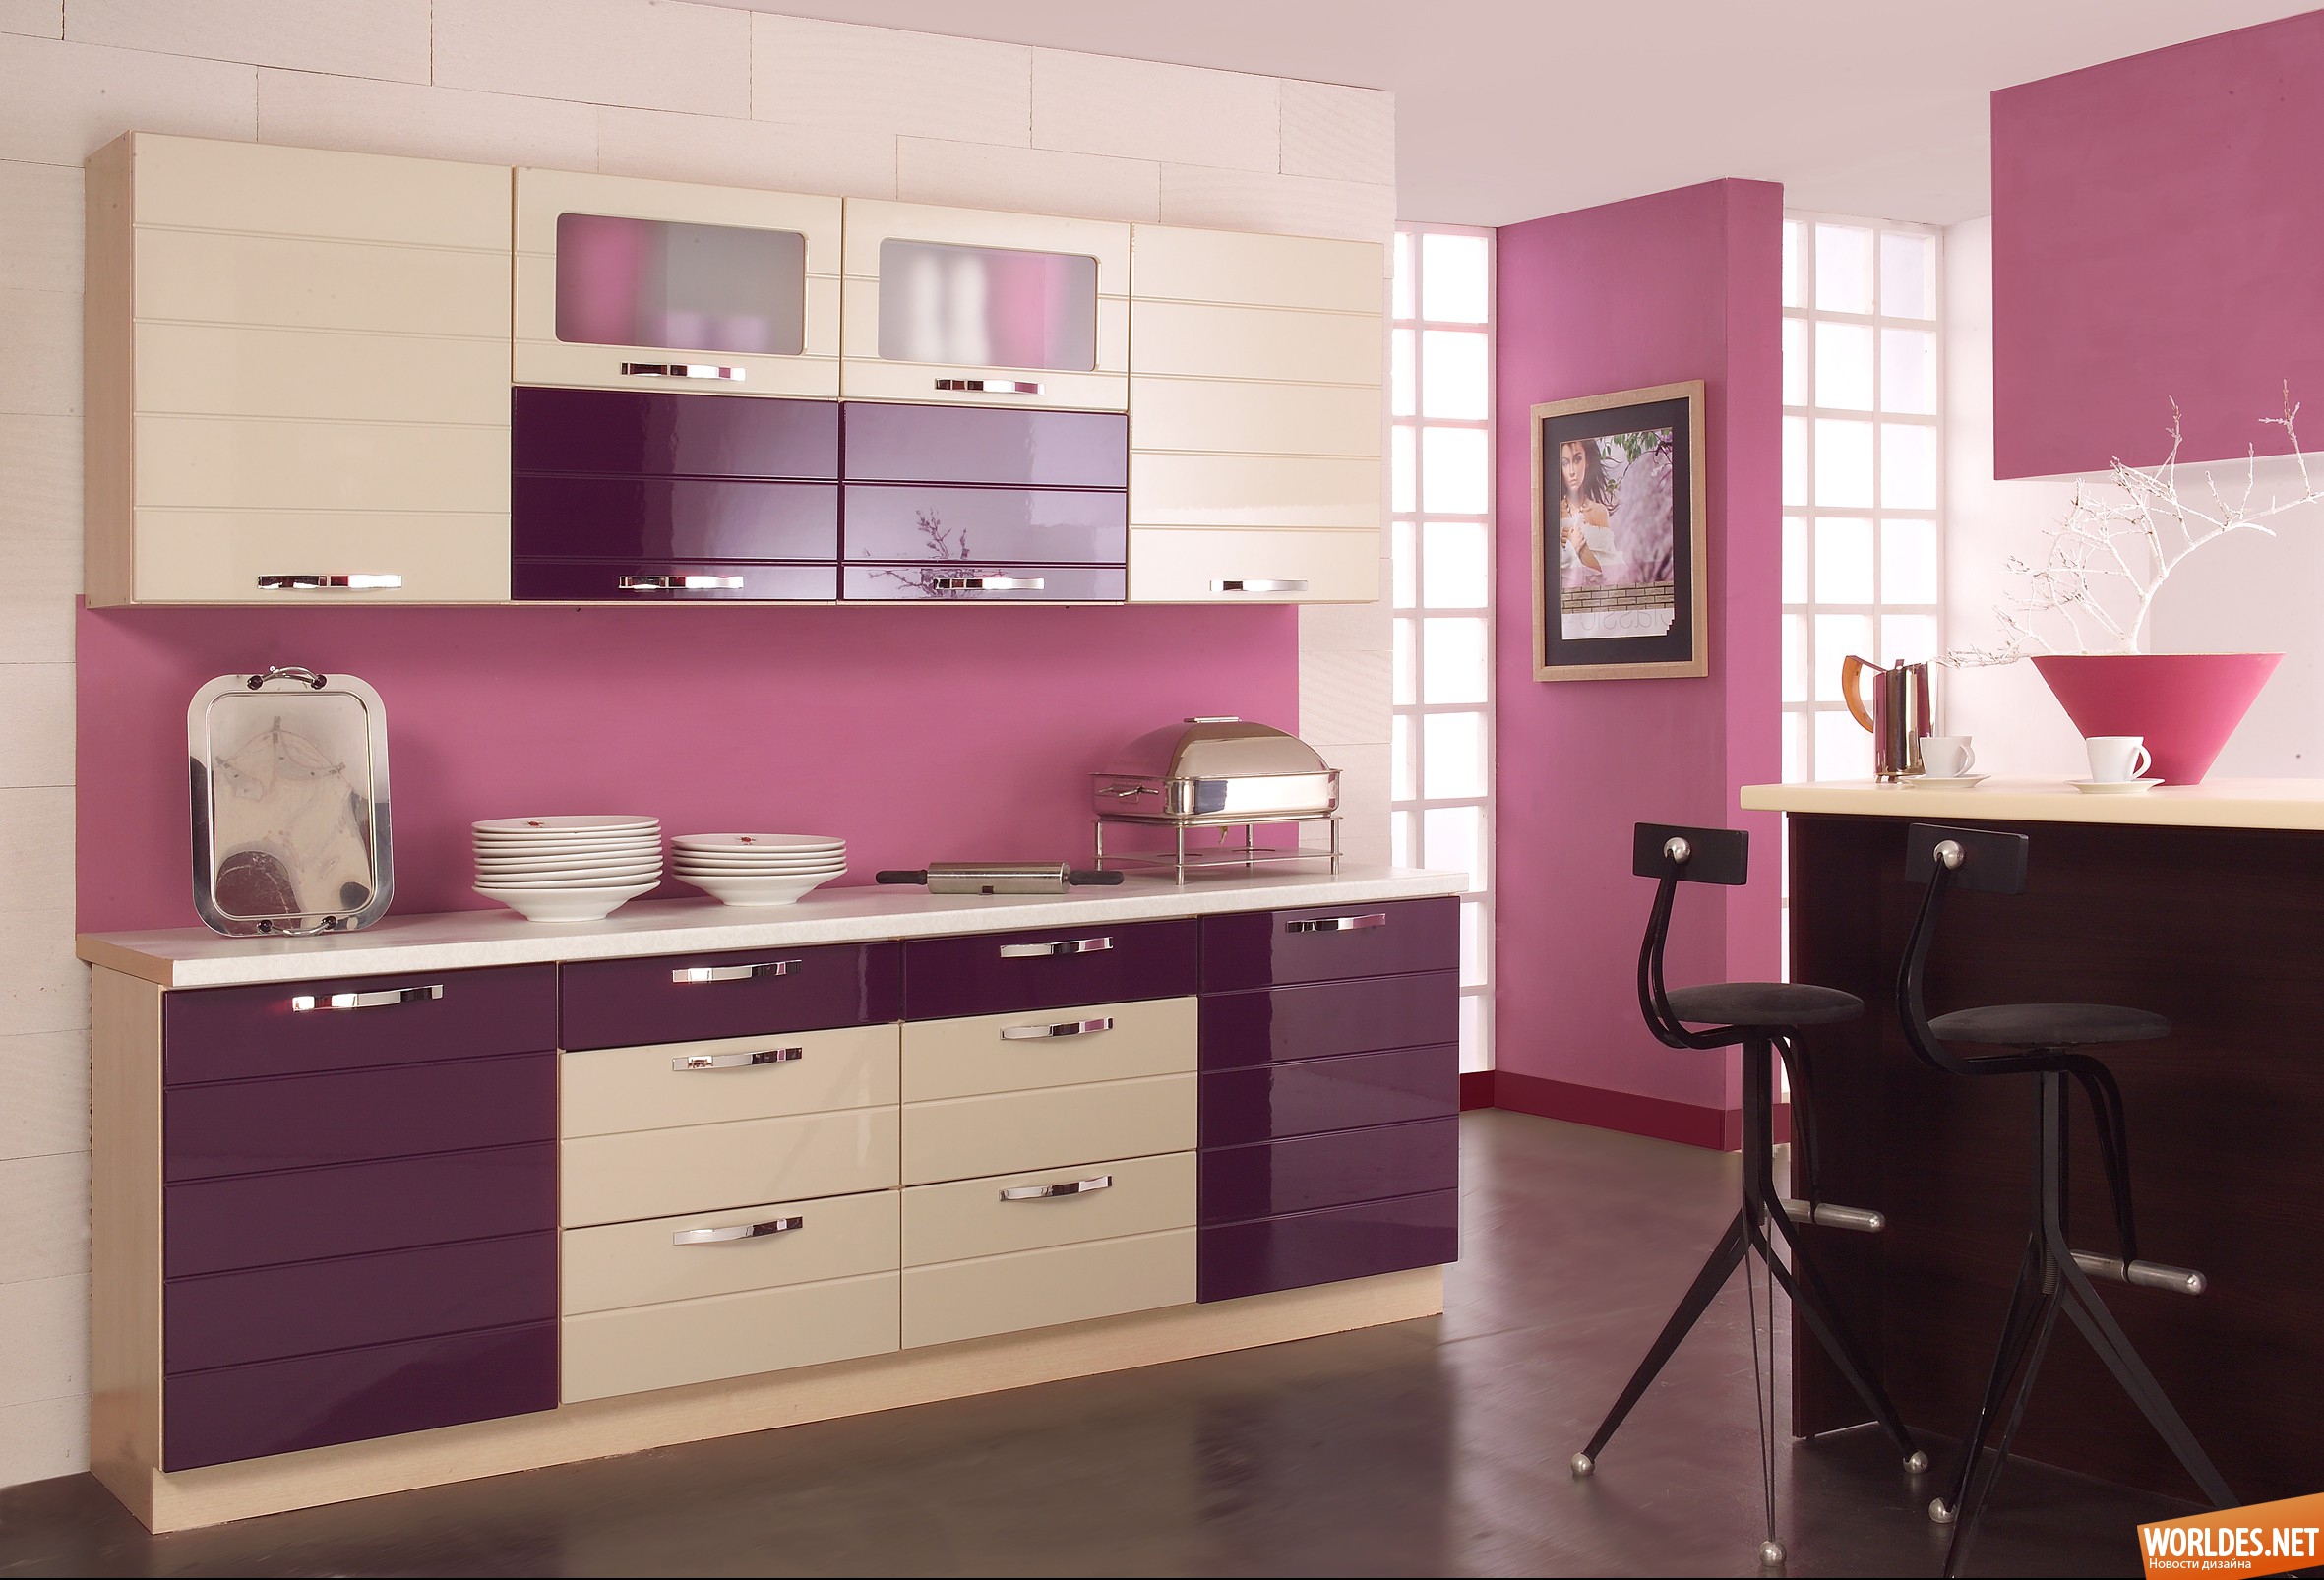 яркая мебель для кухни, мебель для кухни, мебель для кухни фото, цветная мебель для кухни, кухни, кухни фото